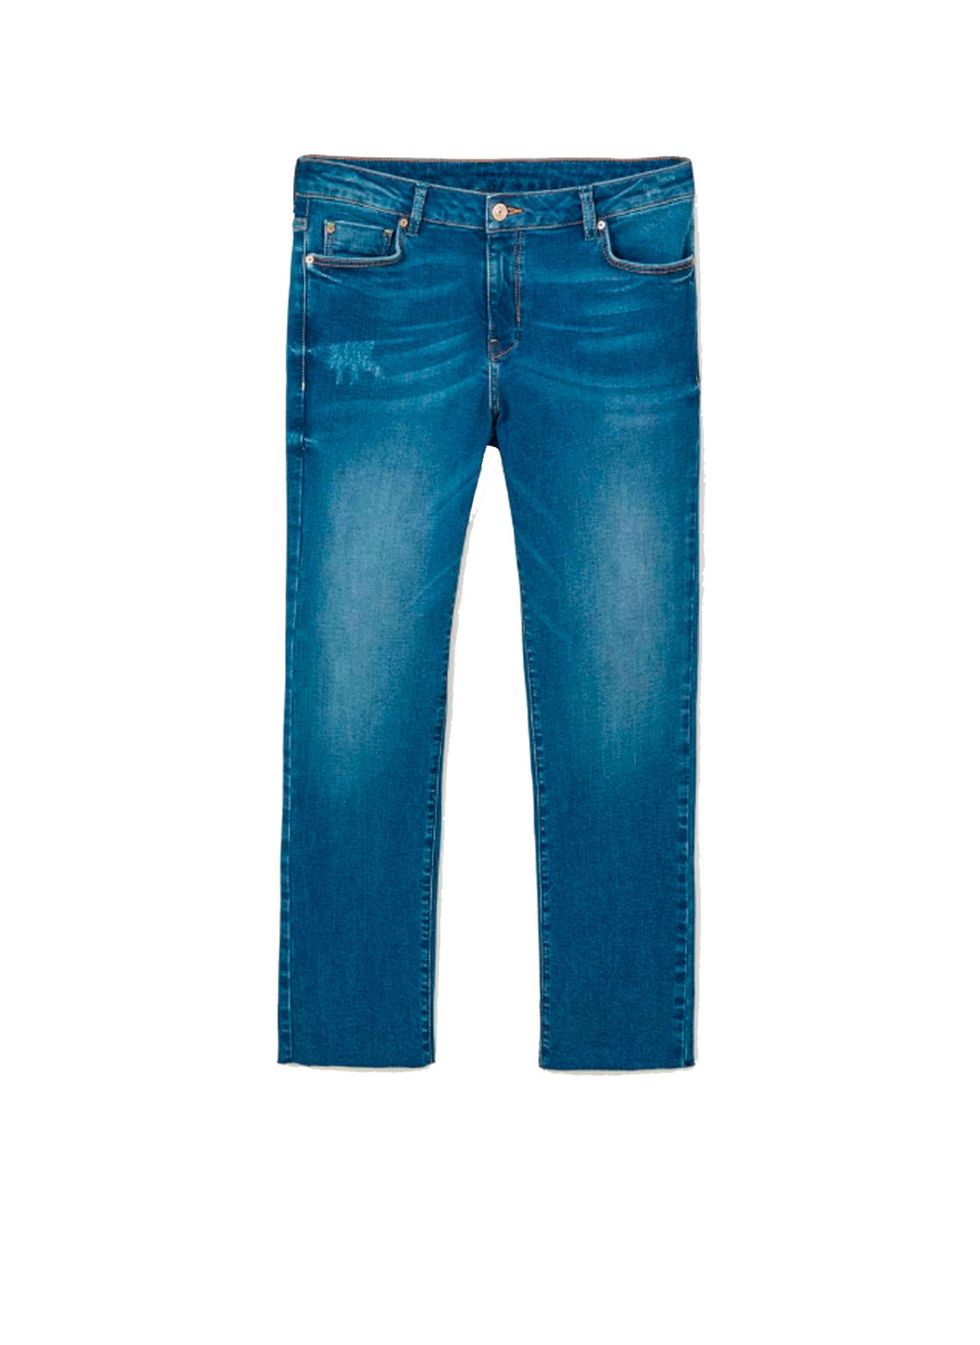 Blue, Product, Denim, Pocket, Jeans, Textile, Style, Electric blue, Fashion, Azure, 